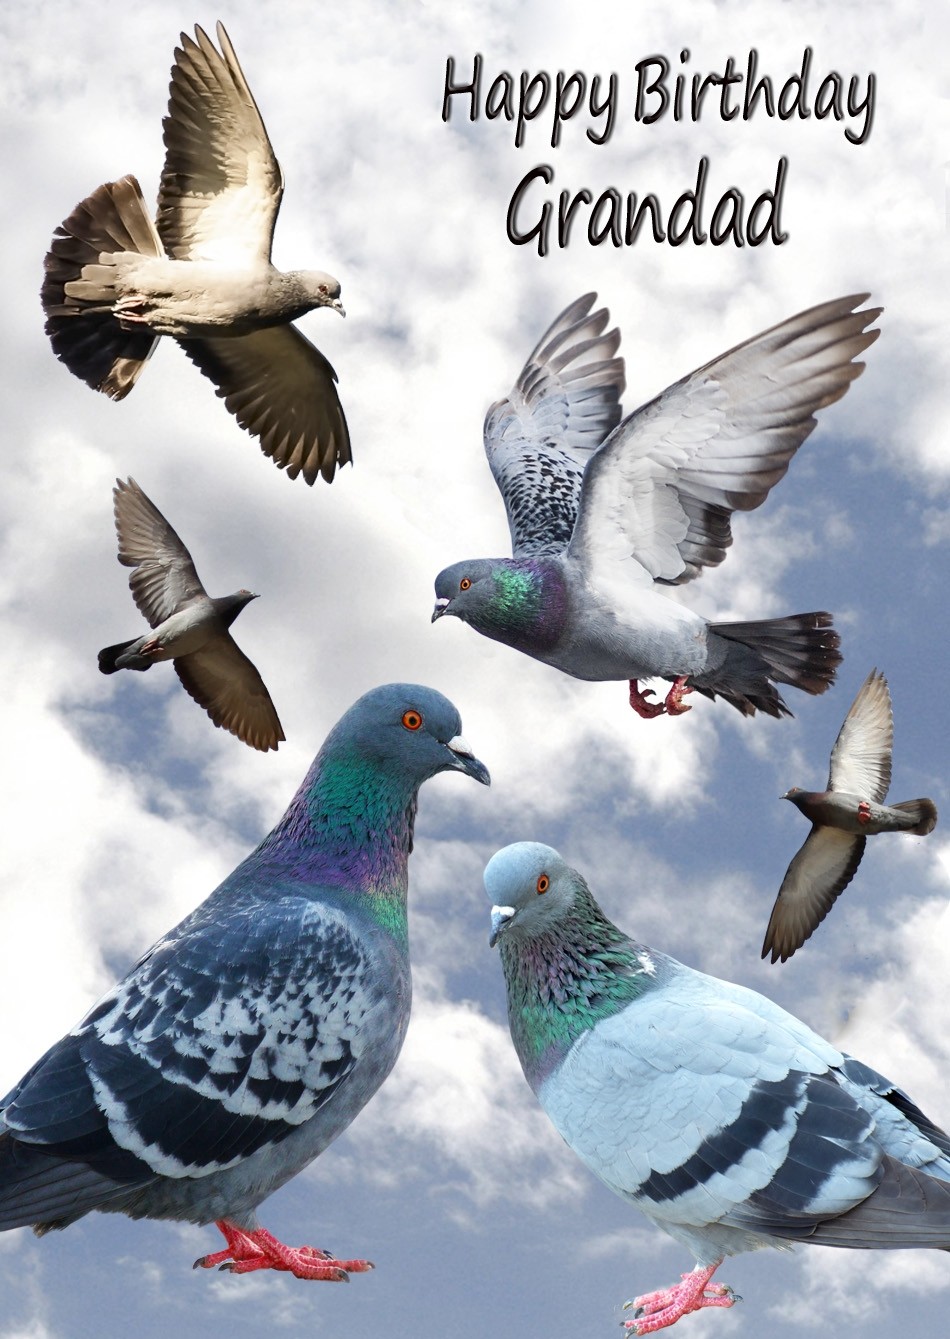 Racing Homing Pigeon Grandad Birthday Card